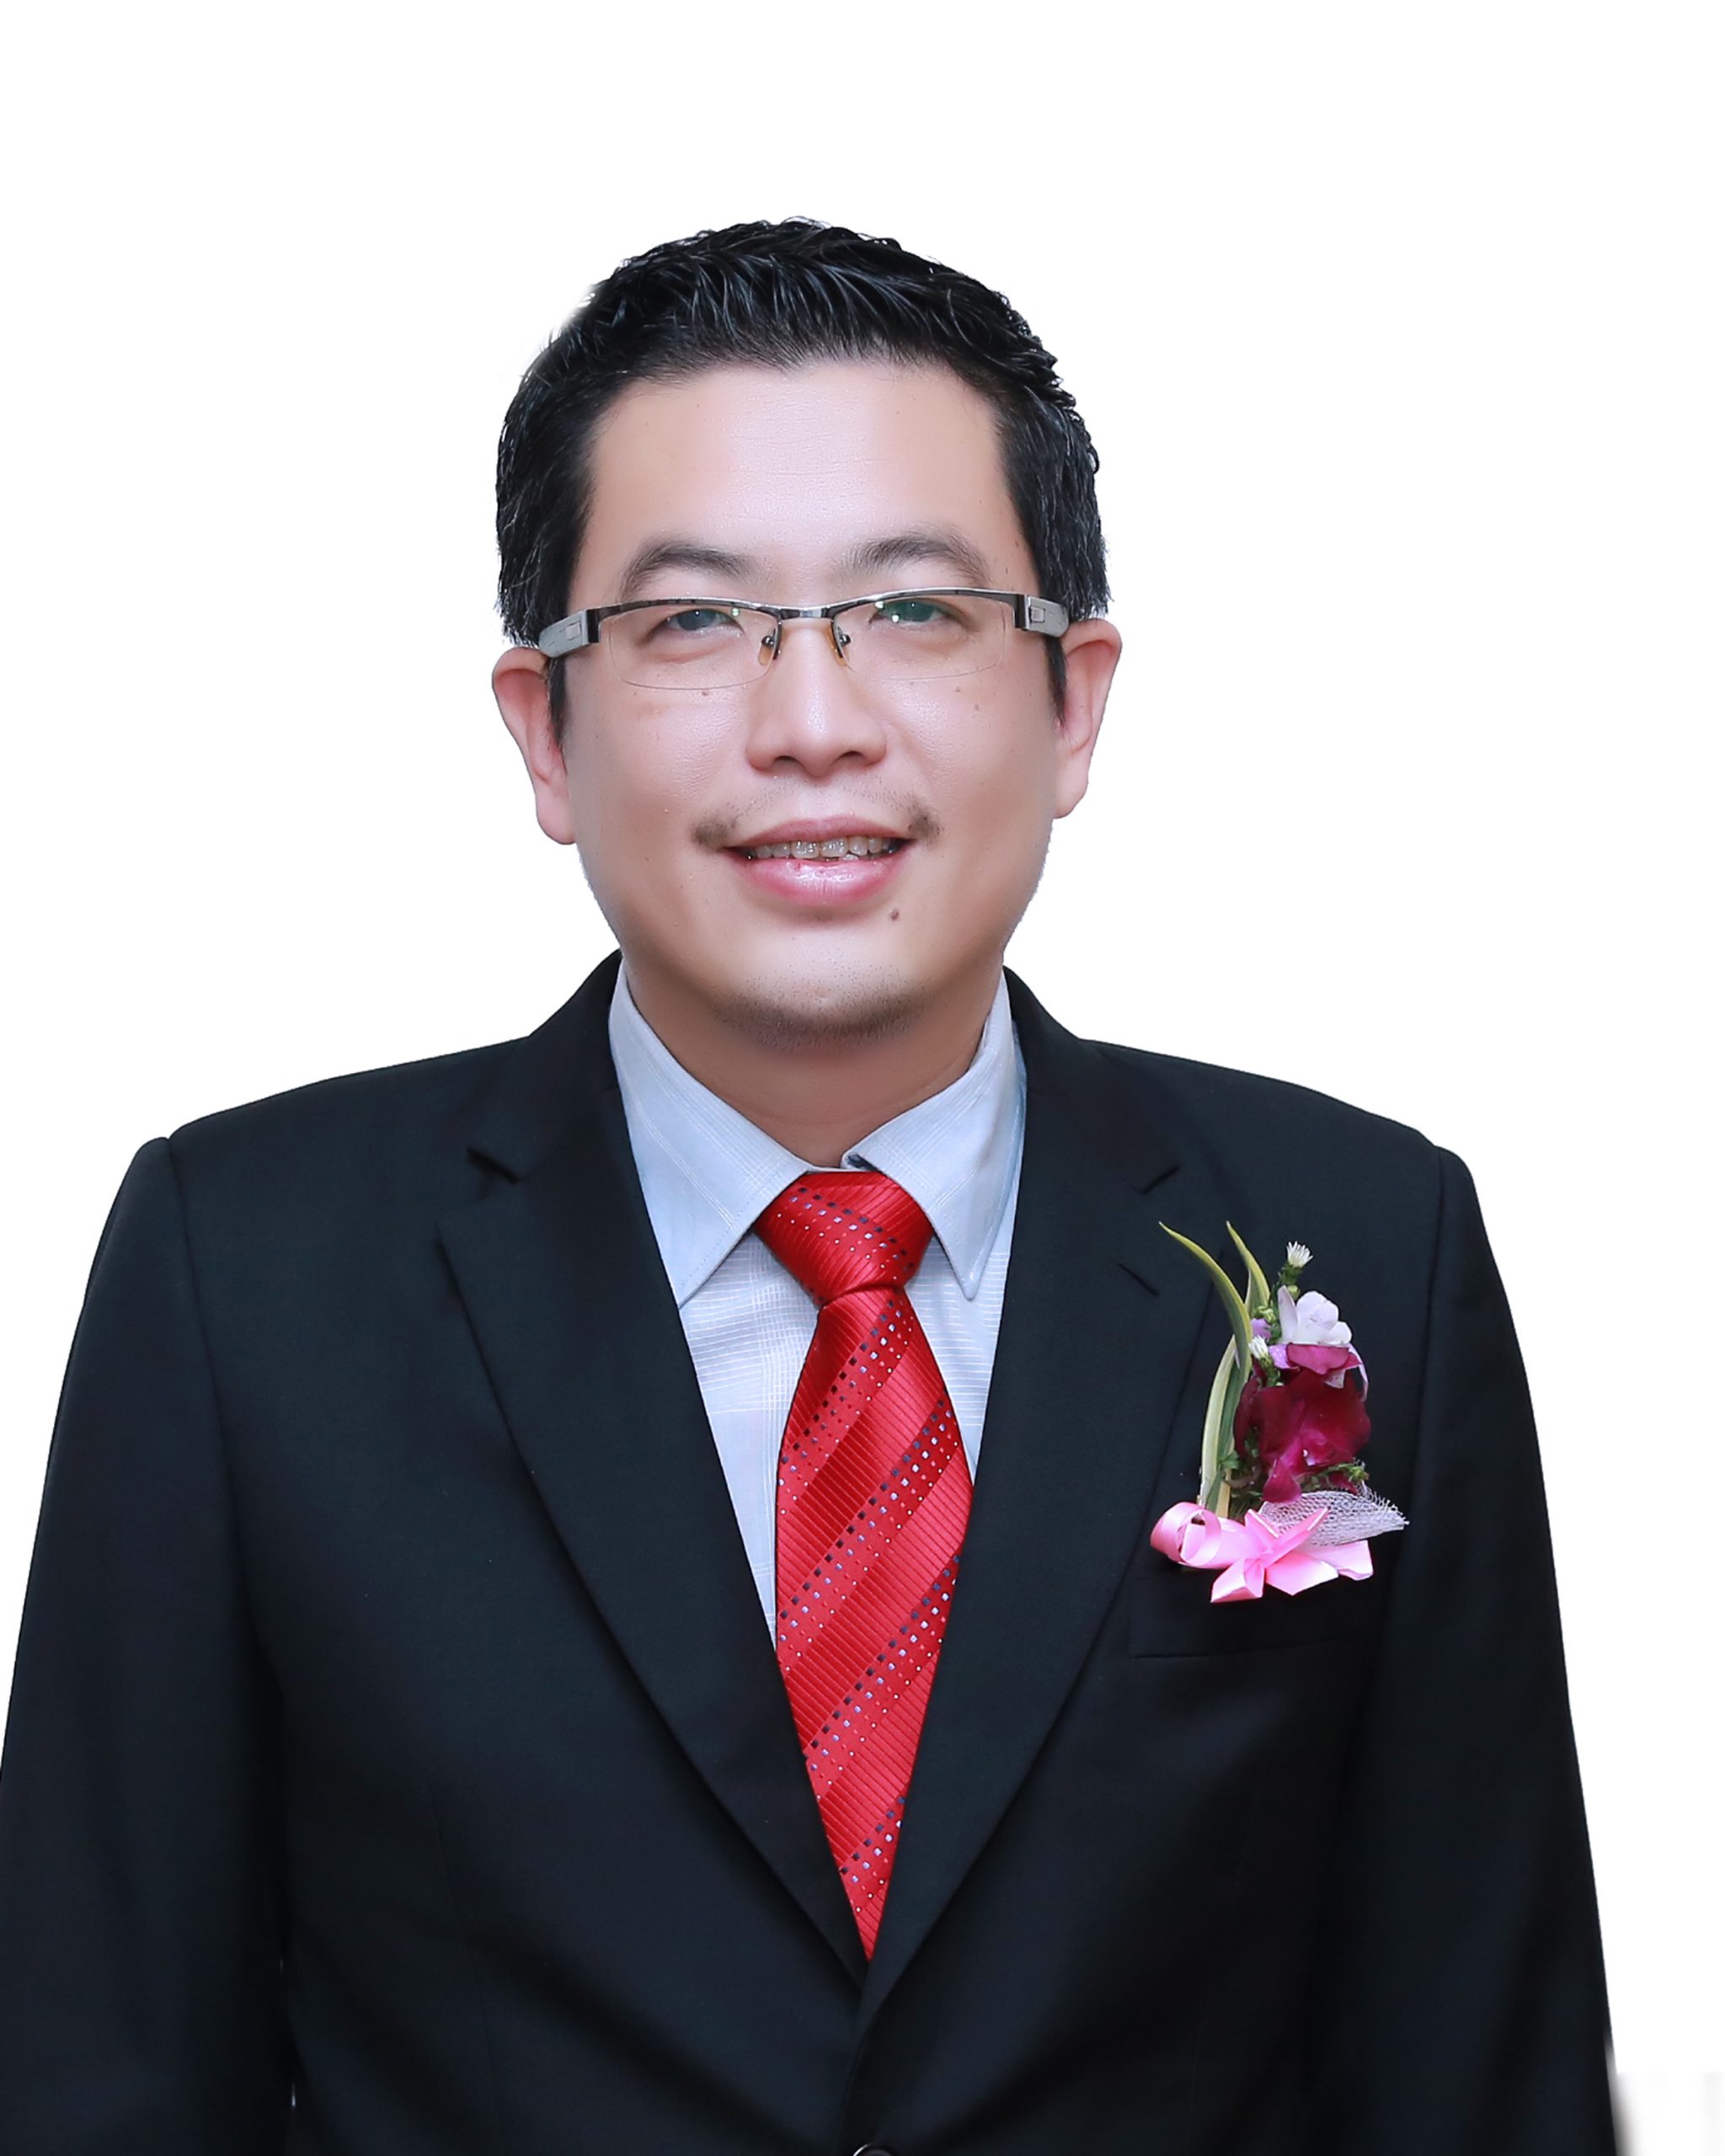 马来西亚刘氏总会总会长刘博文新闻文告